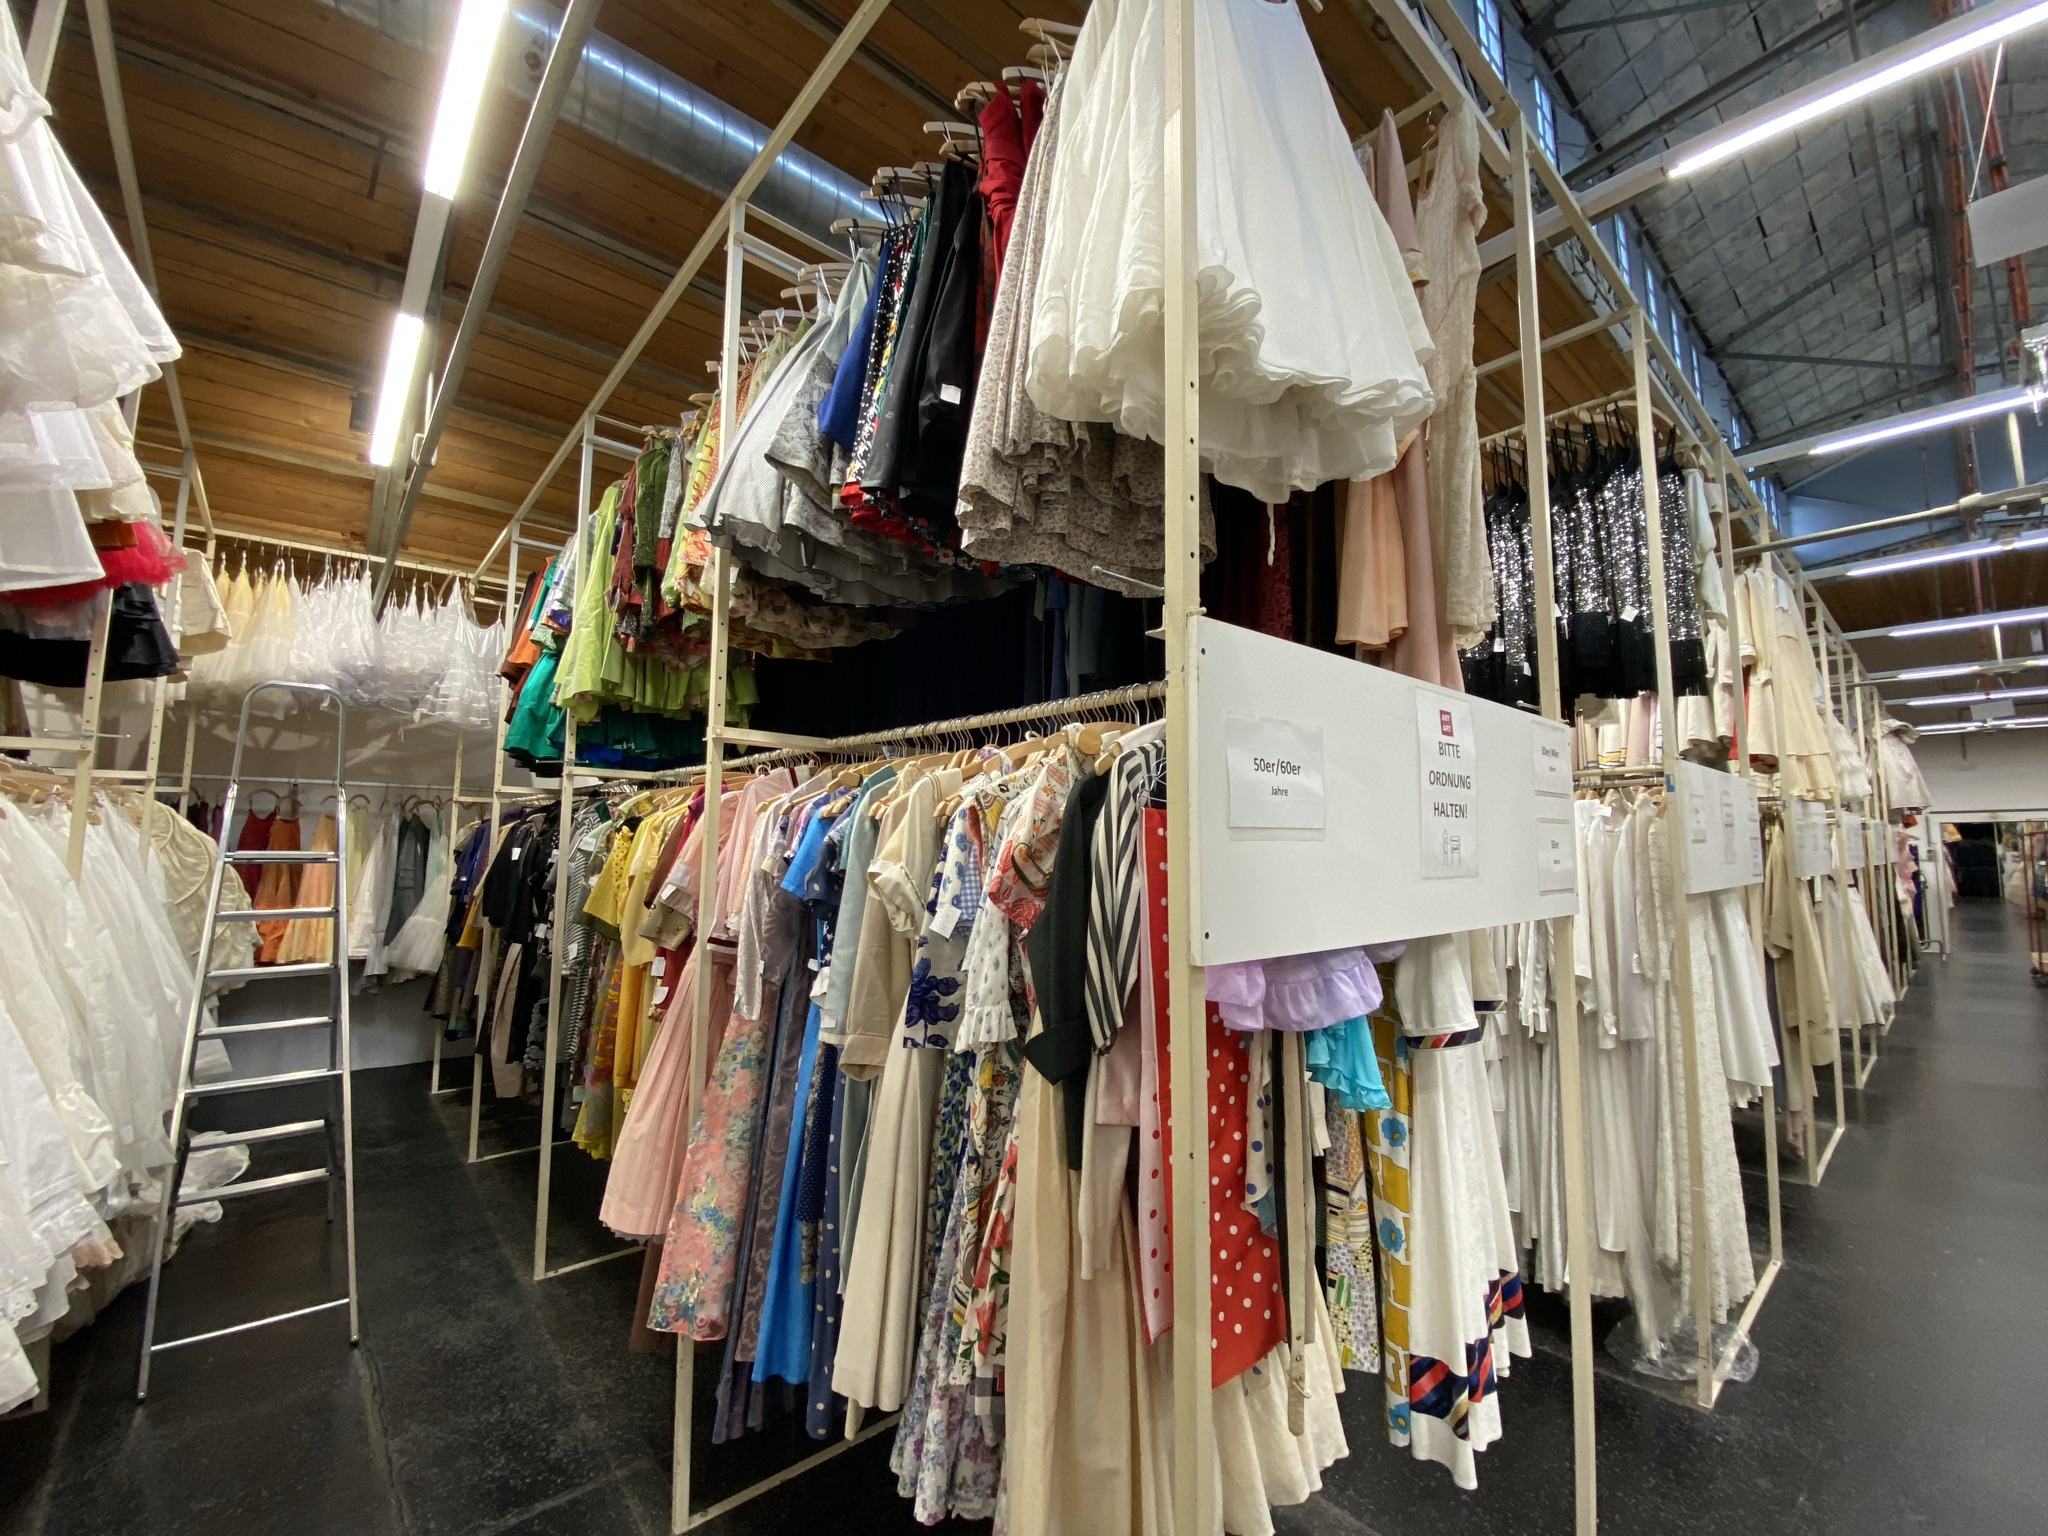 Große Gerüste mit zwei Kleiderstangen übereinander stehen in einer großen Halle. Auf ihnen hängen bunte Kleider  aus de 50er und 60er Jahren.